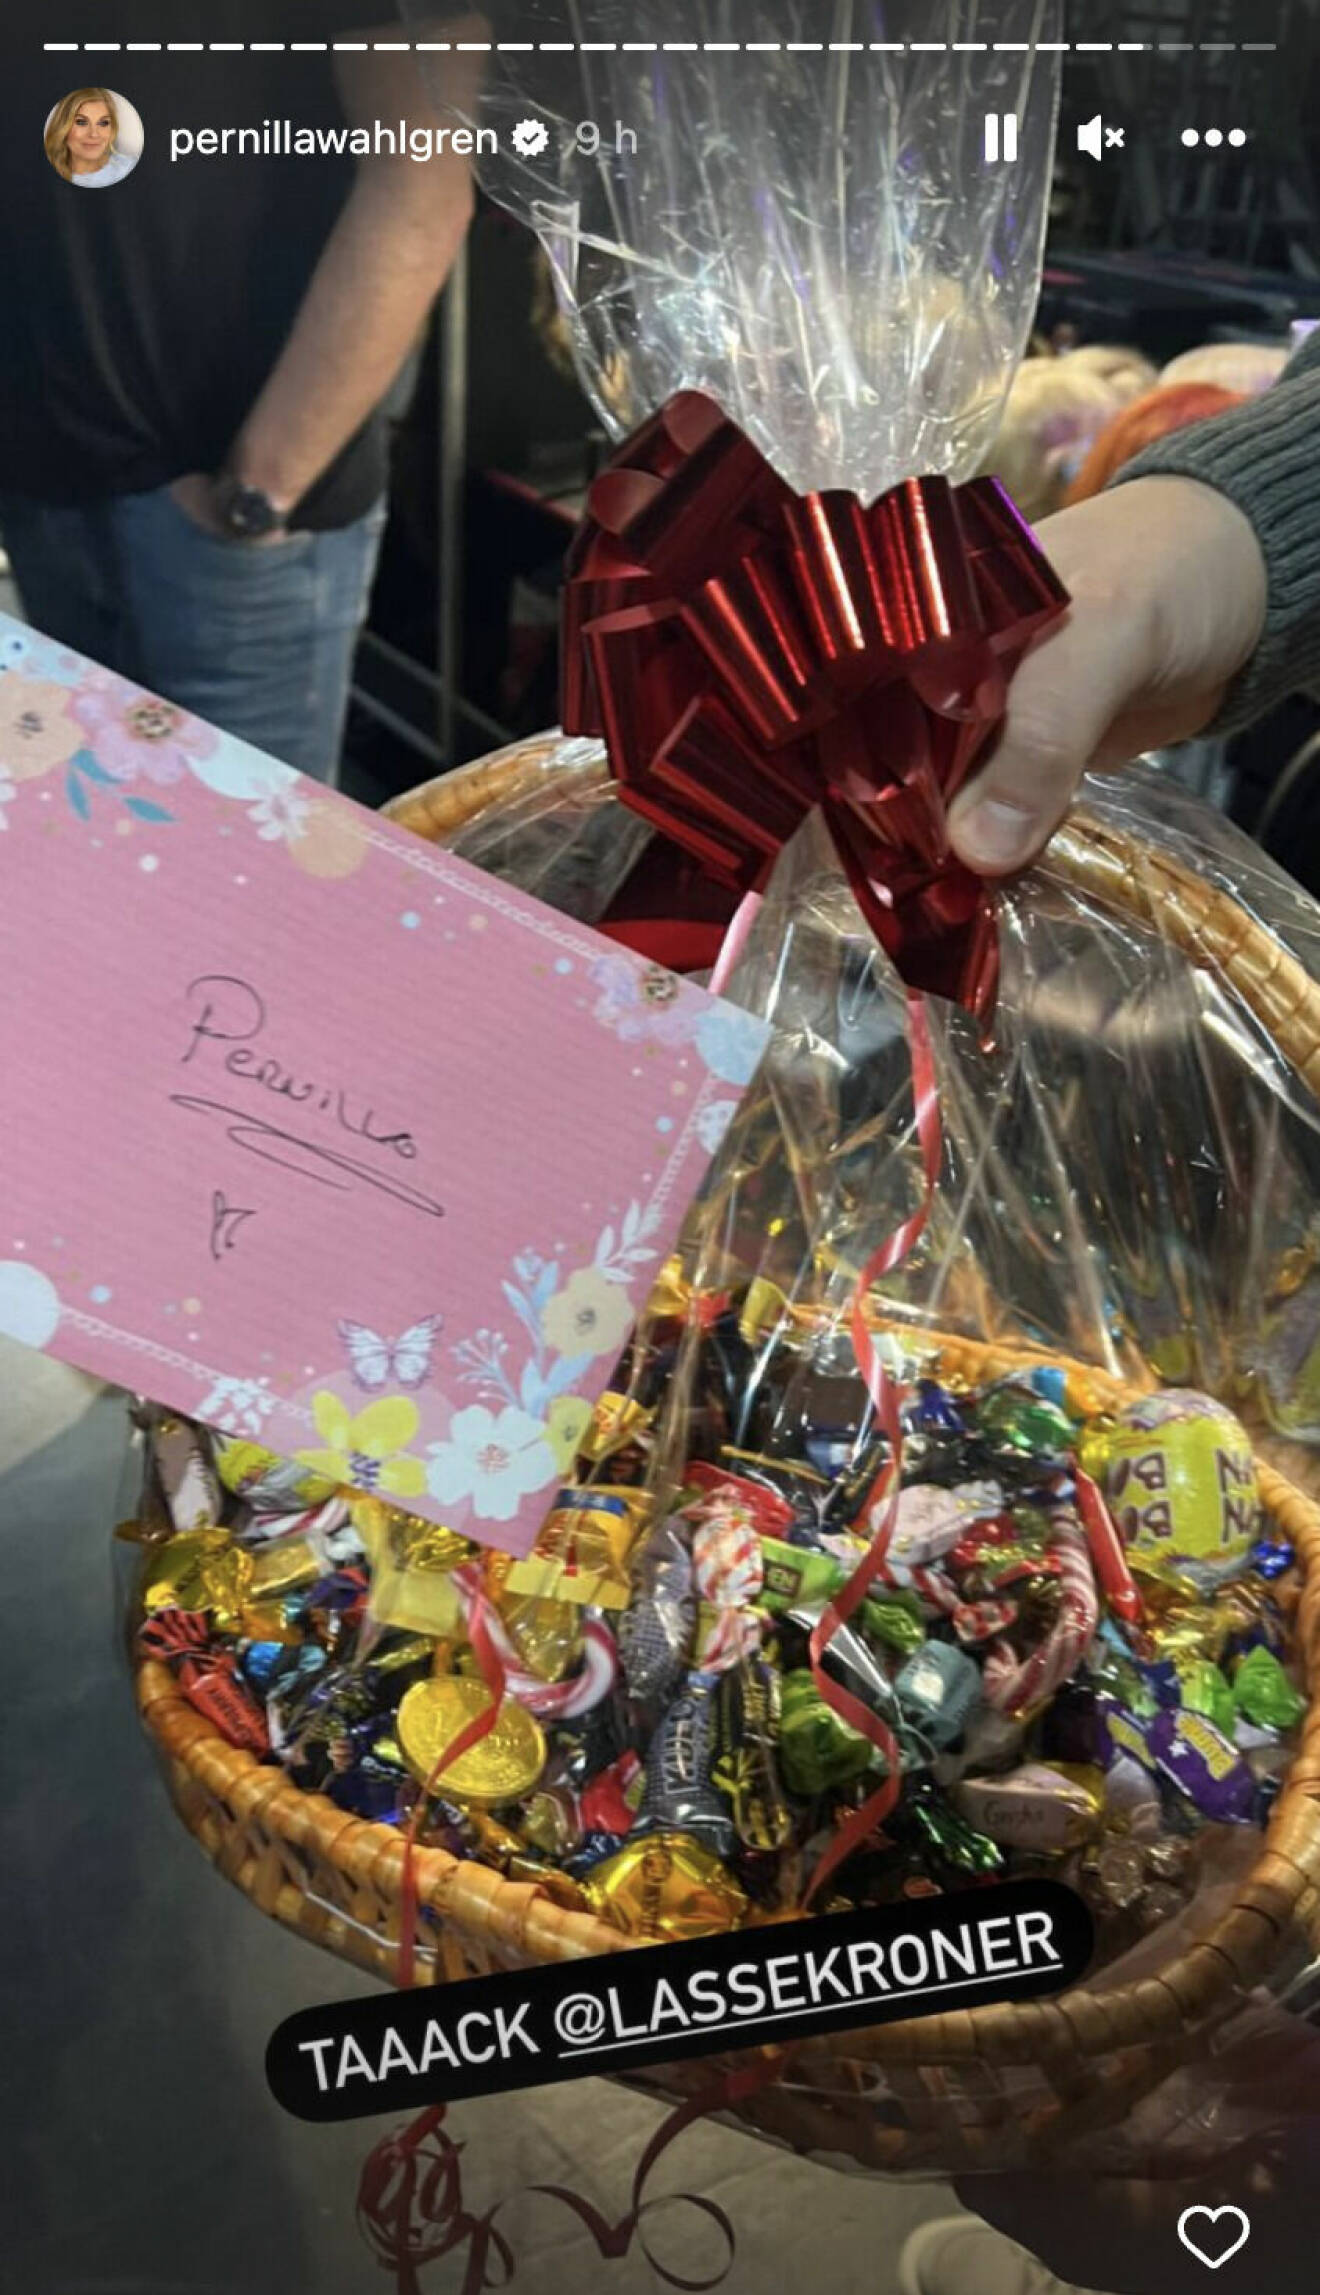 Pernilla Wahlgren visar på Instagram upp en korg full av choklad och godis från Lasse Kronér